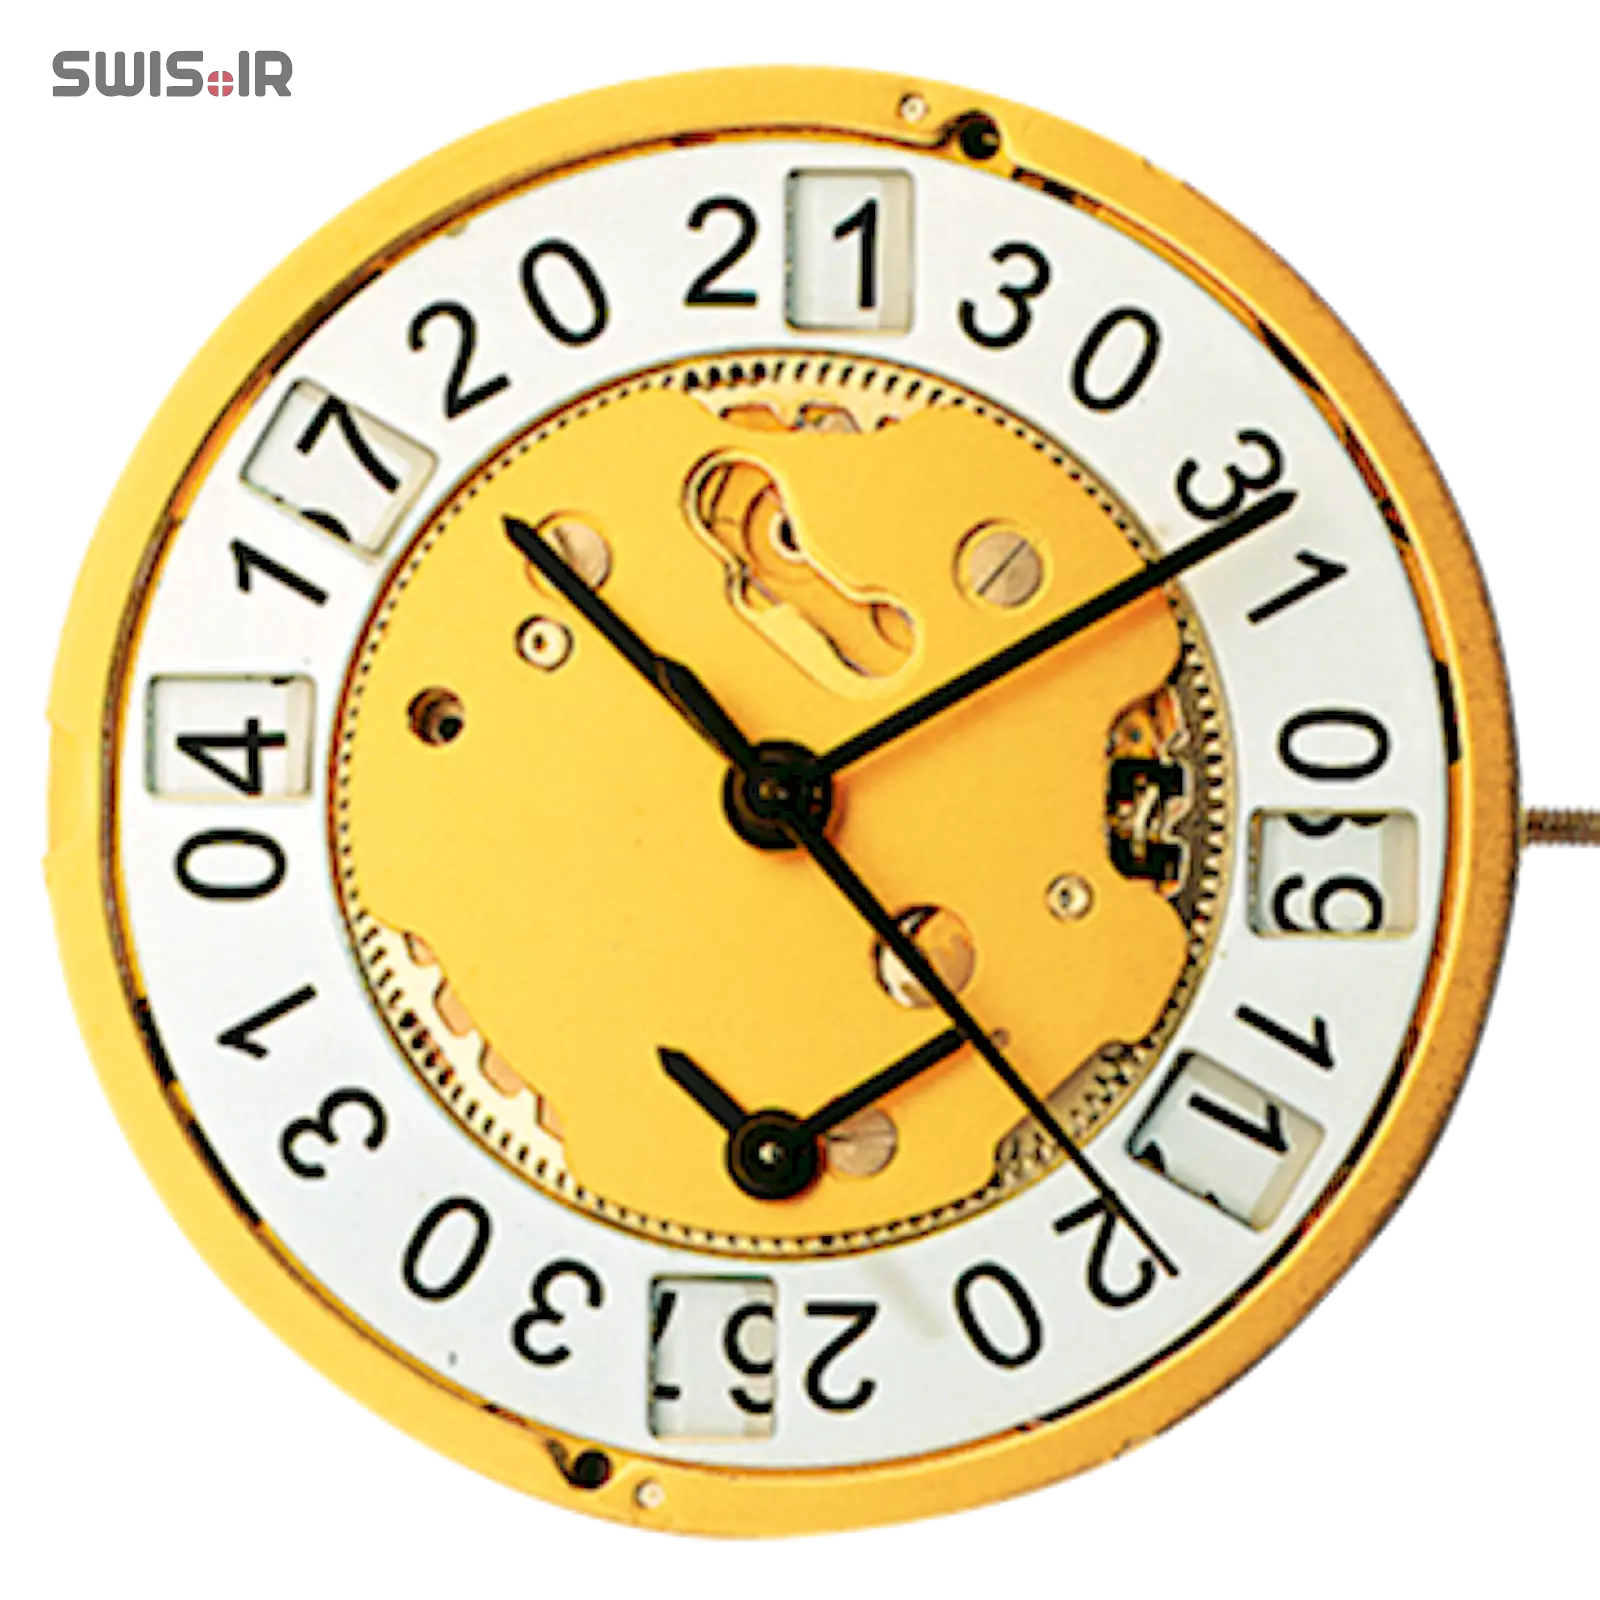 تصویر روی موتور ساعت کالیبر 4210B ساخت شرکت روندا سوئیس